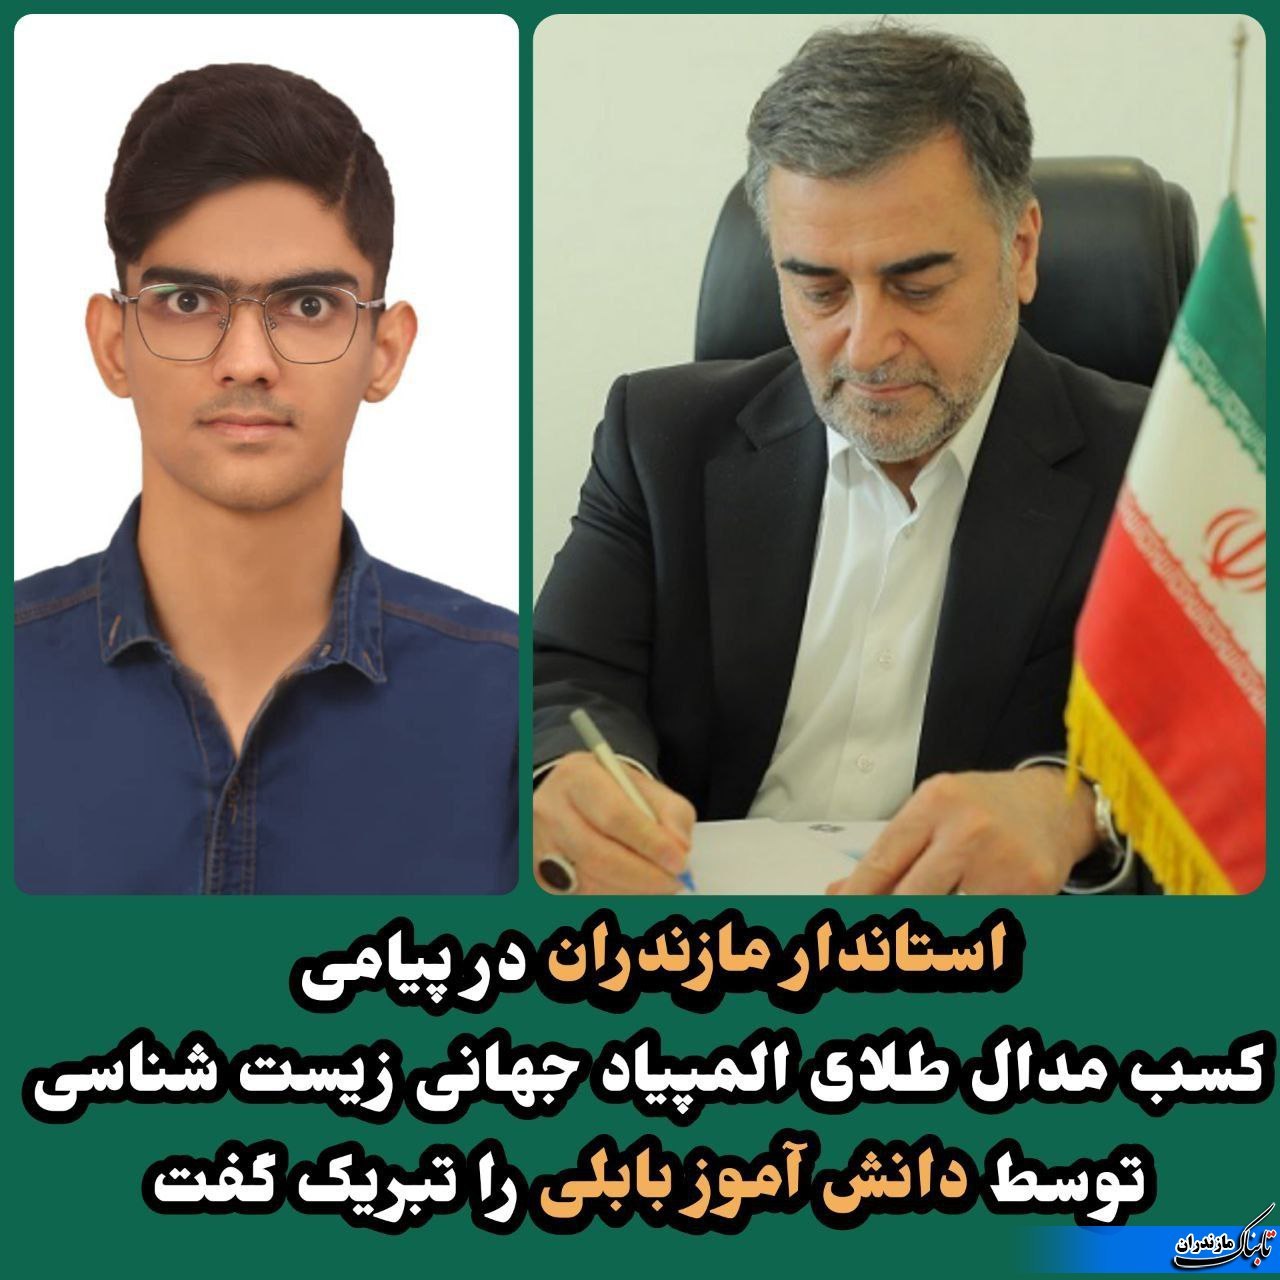 پیام تبریک استاندار مازندران به دانش آموز نابغه بابلی